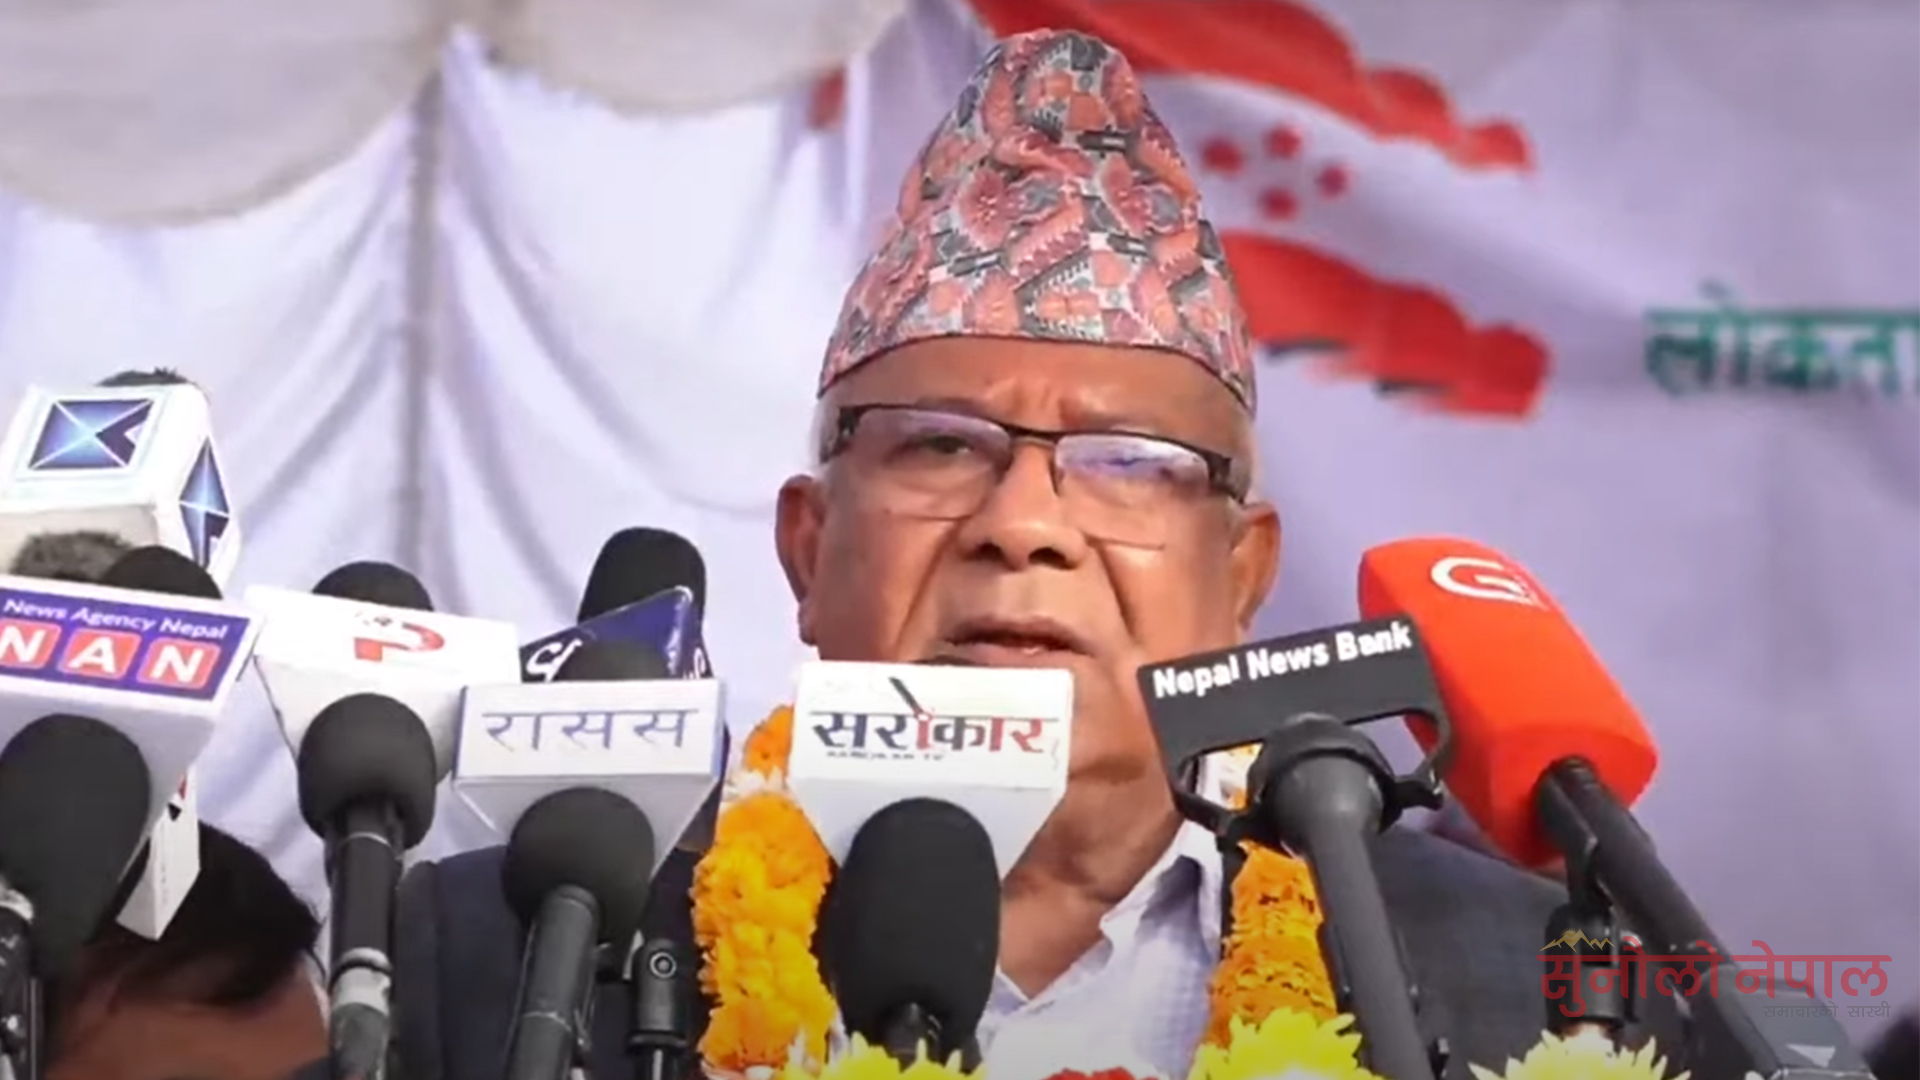 वाम लोकतान्त्रिक गठबन्धन टुट्नुमा कांग्रेस जिम्मेवार : अध्यक्ष नेपाल